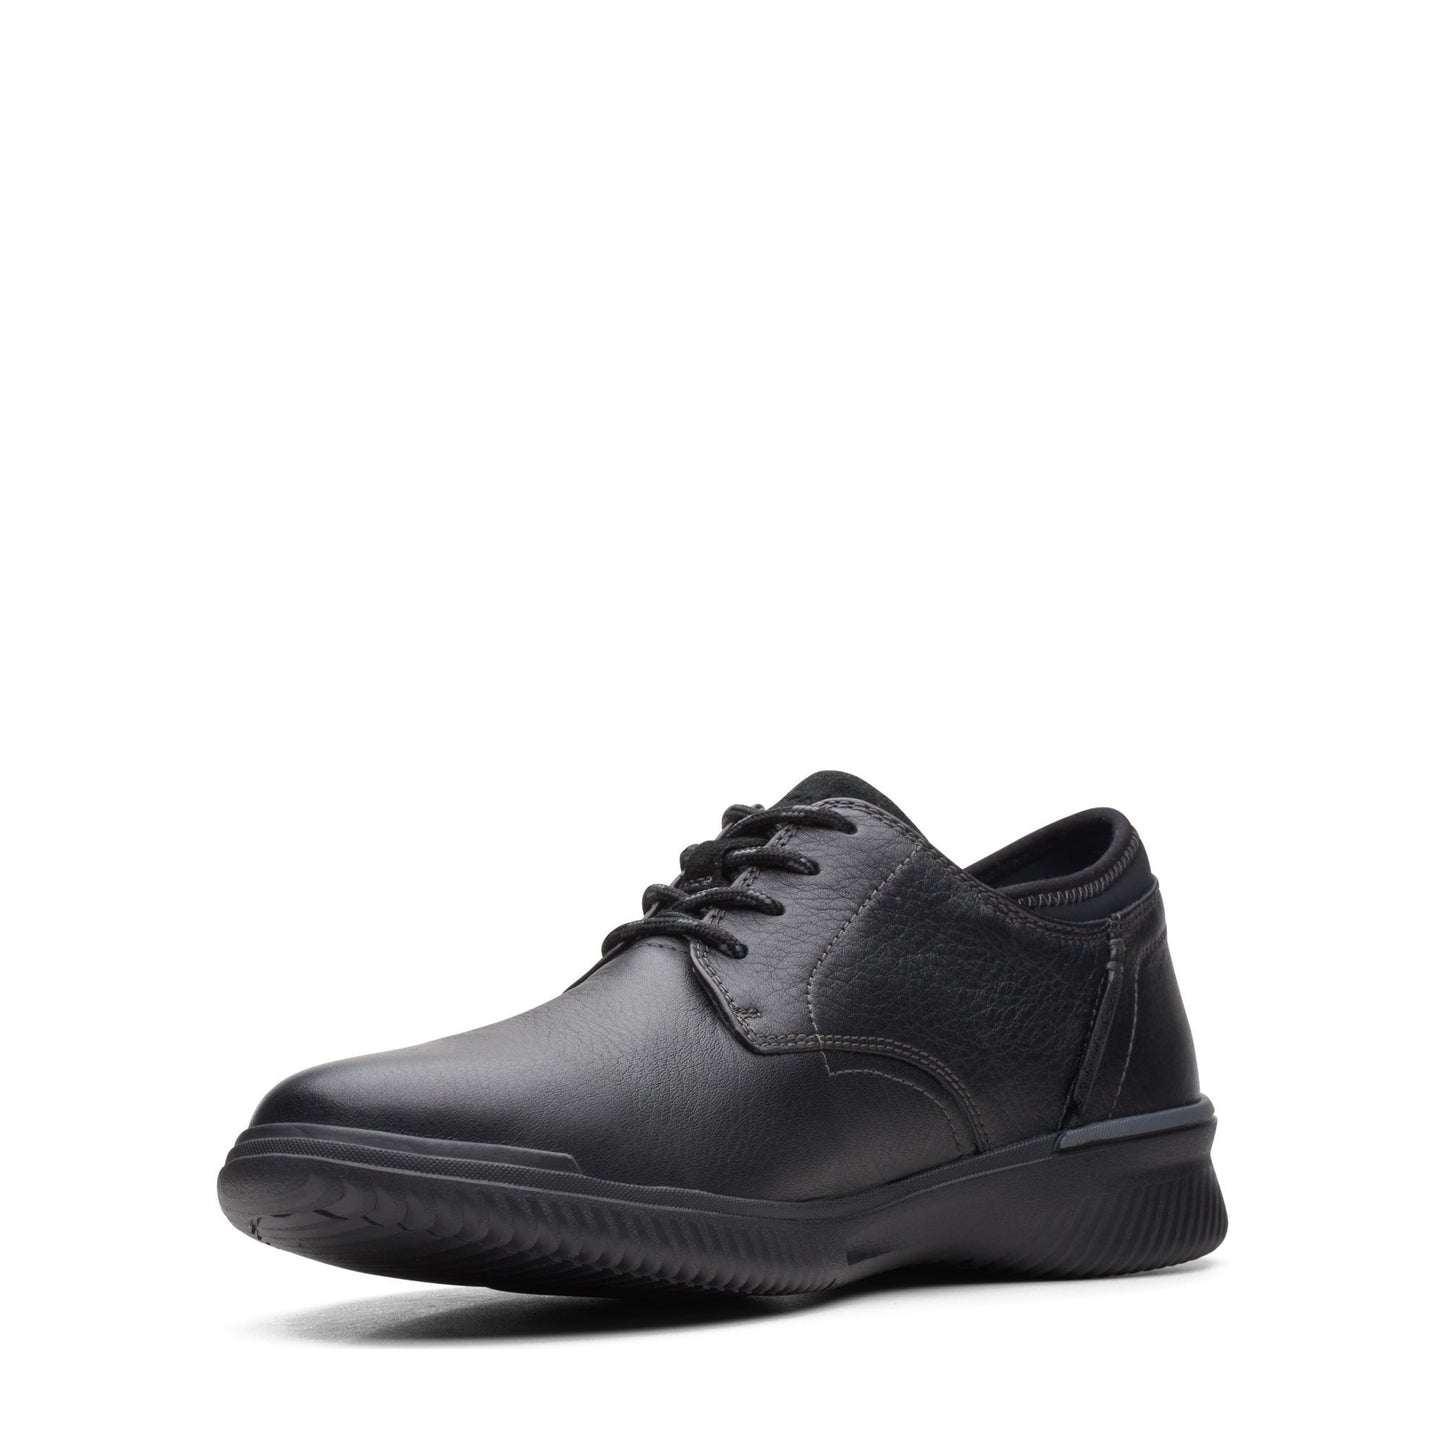 Zapatos Derby De La Marca Clarks Para Hombre Modelo Donaway Plain Black Leather En Color Negro